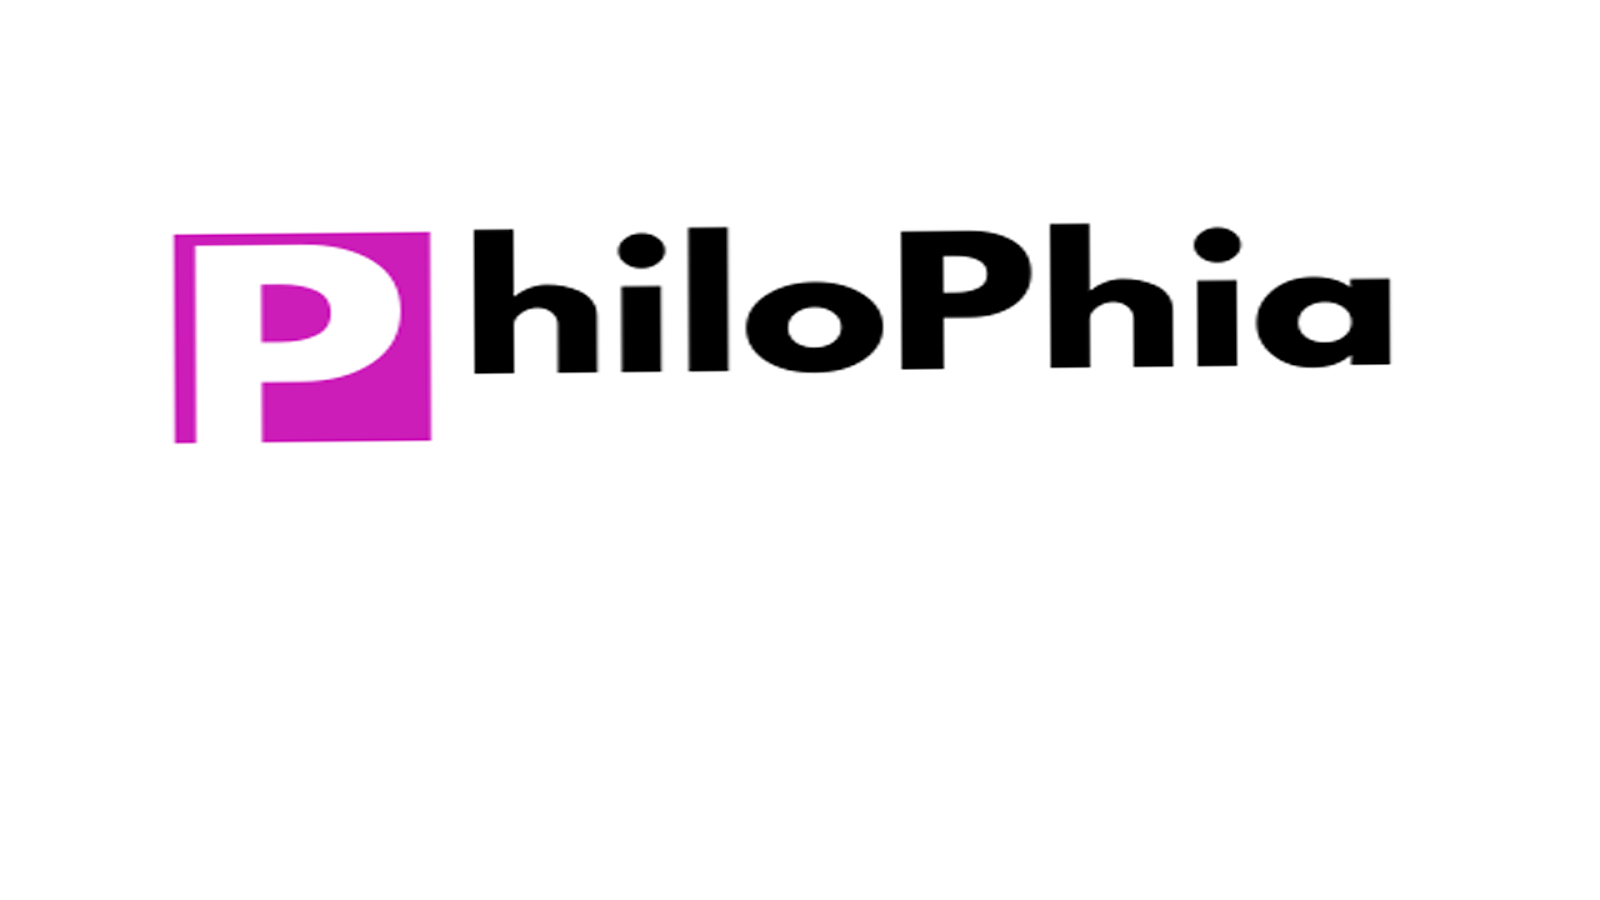 PhilosPhica